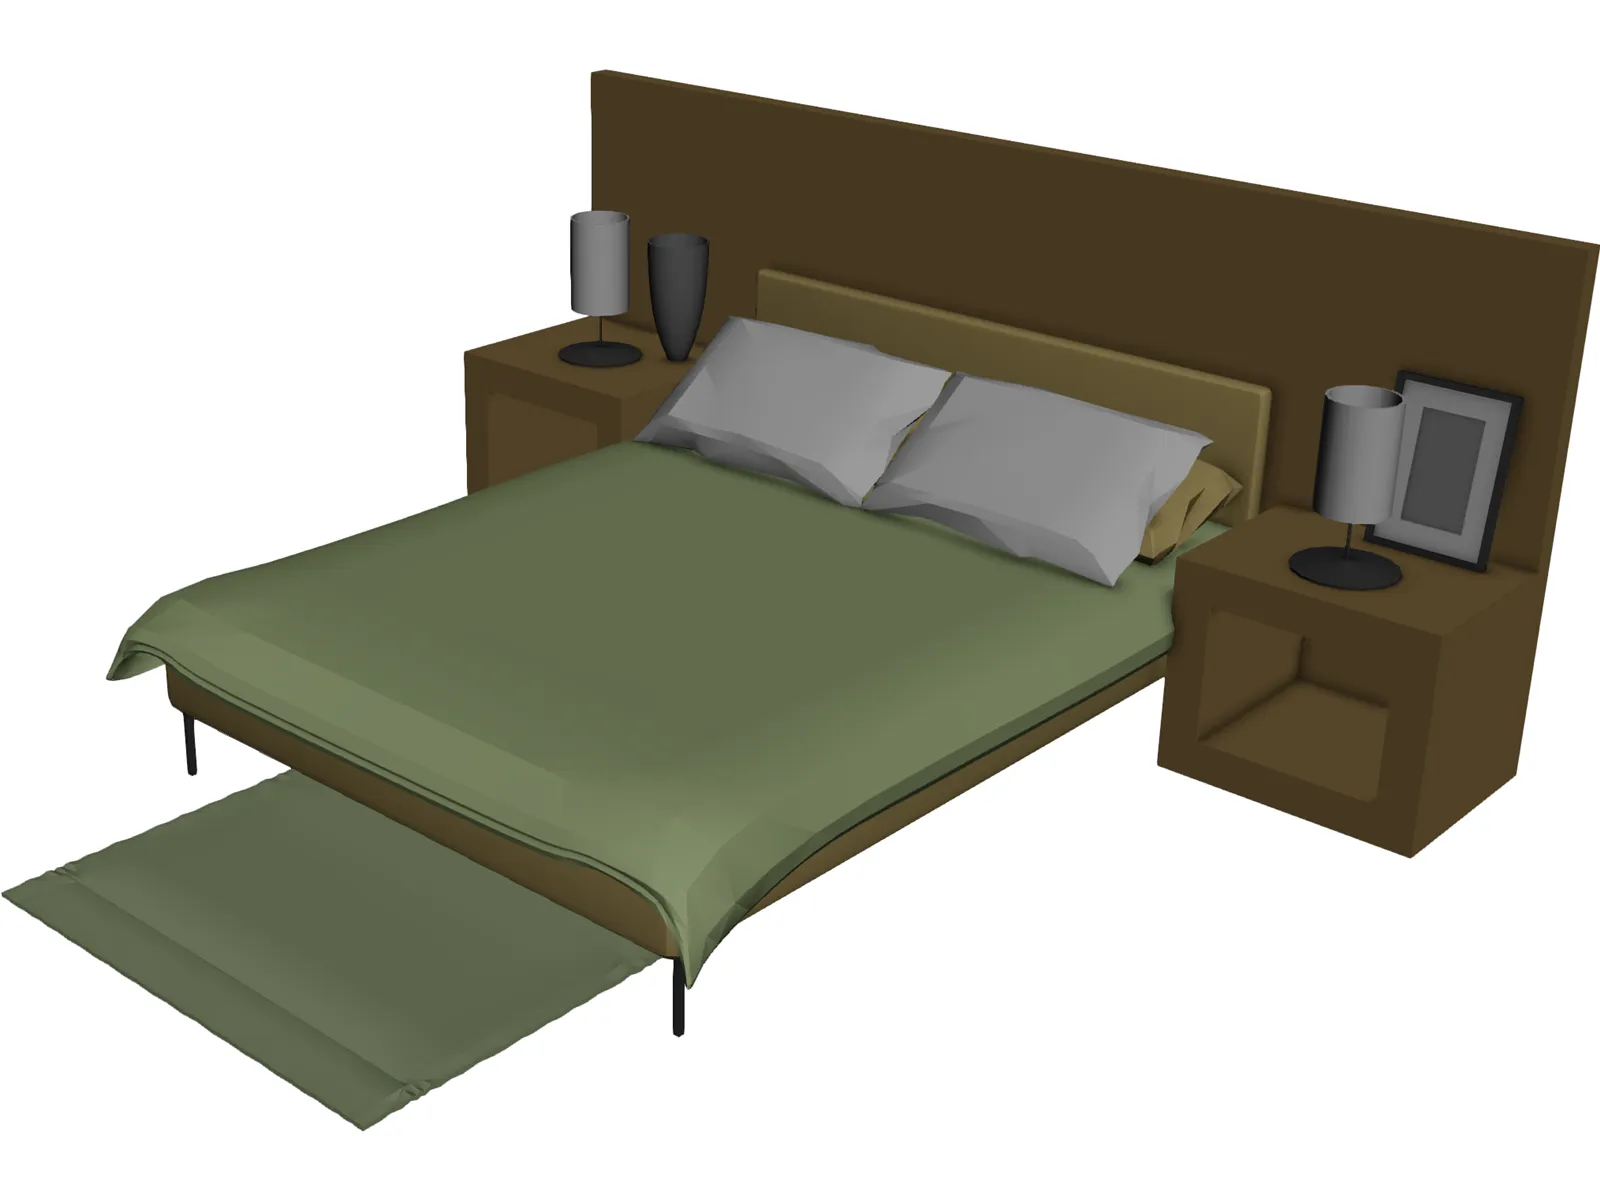 Bed Hospital 3D Model - 3D CAD Browser